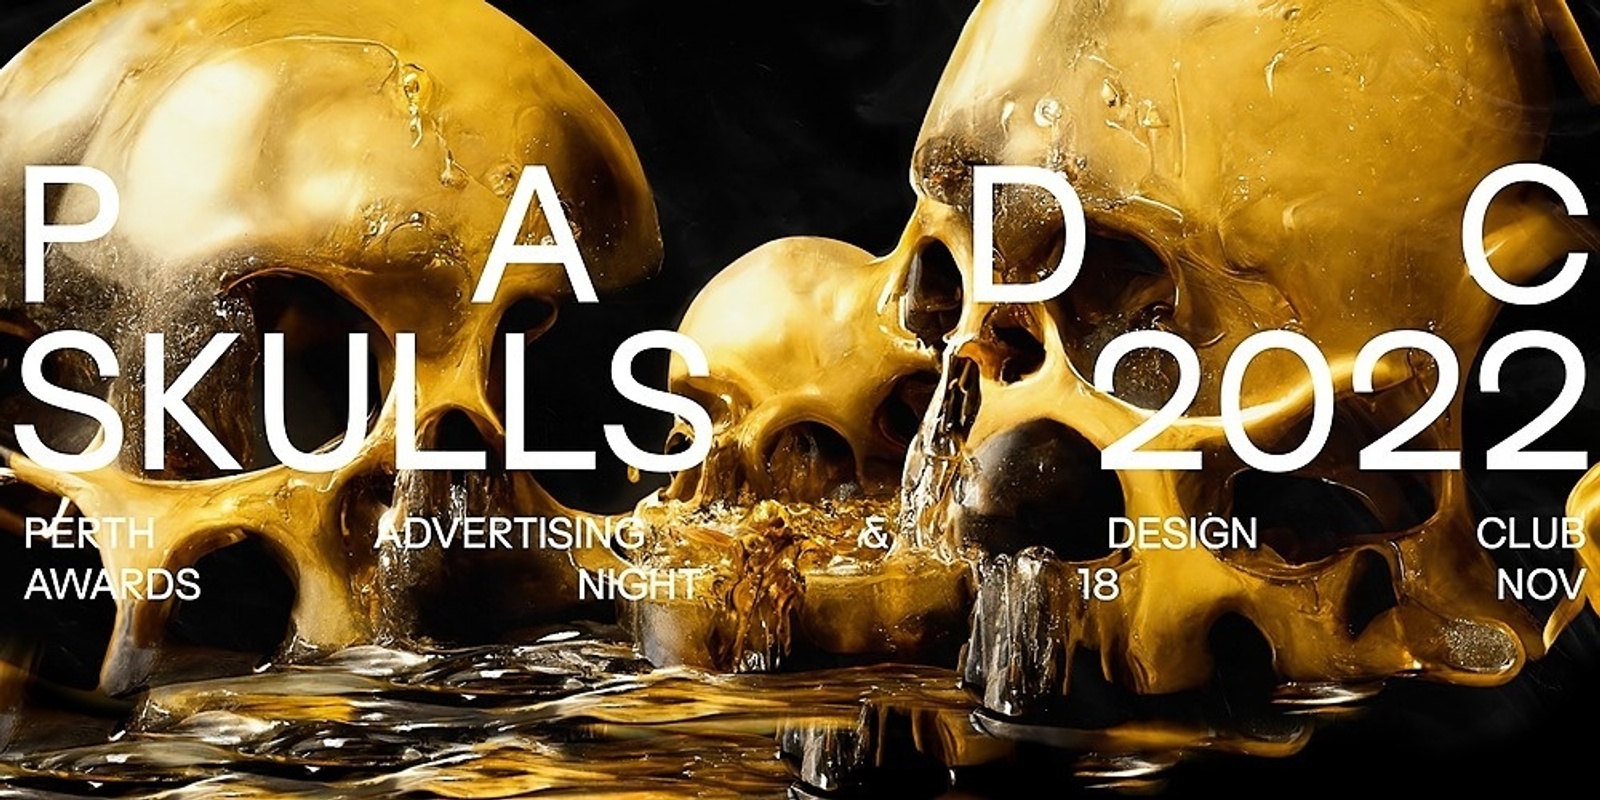 Banner image for PADC Skull Awards 2022